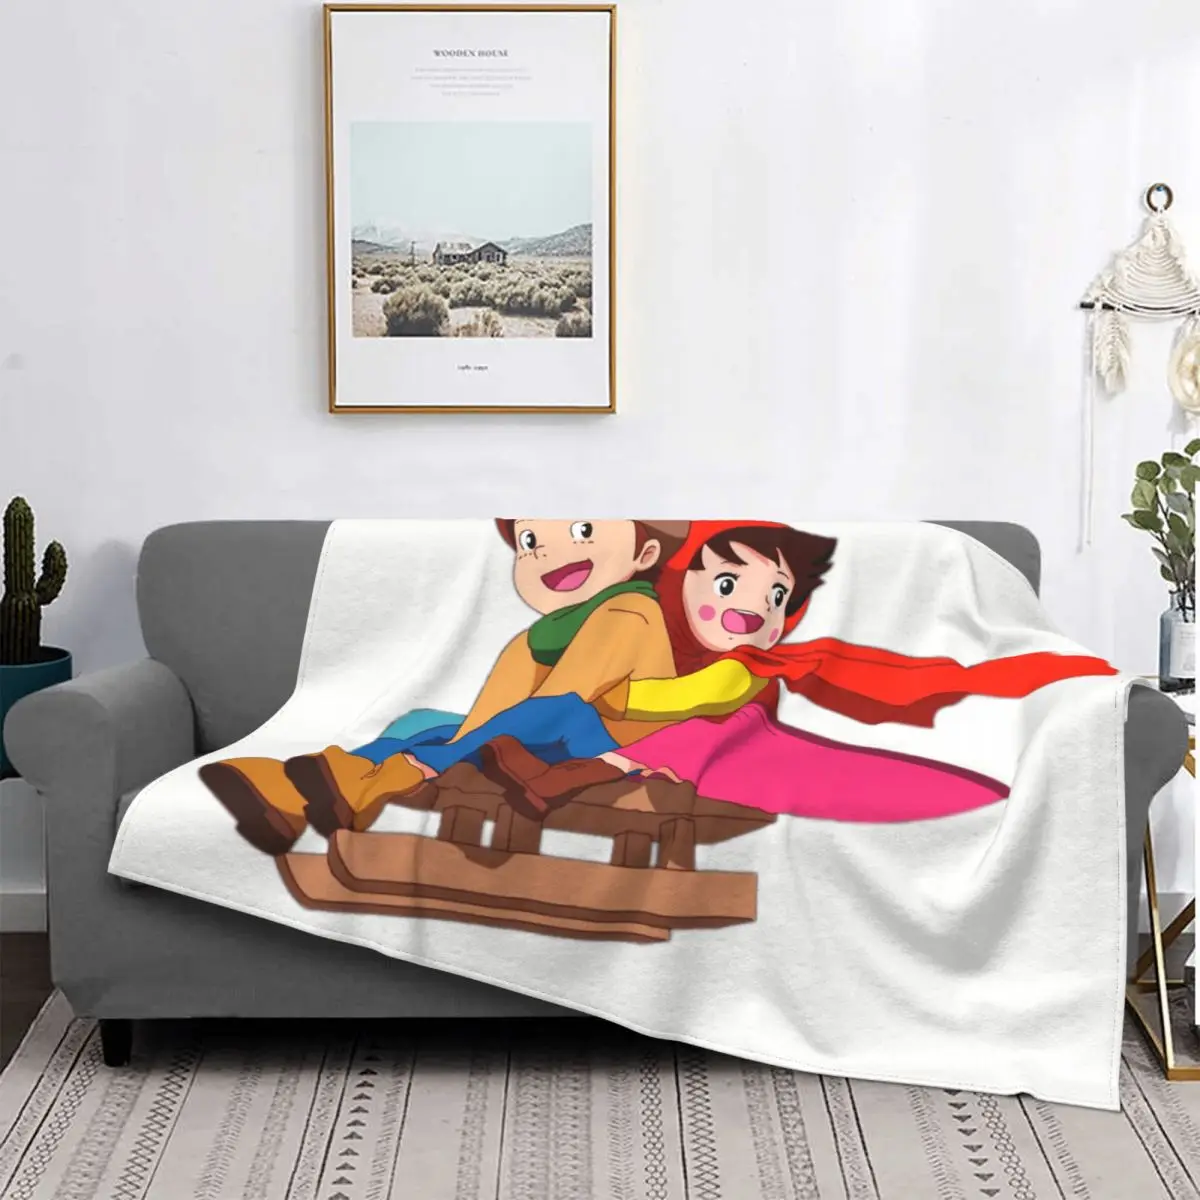 

Одеяло Heidi And Peter On Sleigh, мягкое Фланелевое флисовое теплое одеяло с 3D принтом, Мультяшные пледы Alps, домашнее постельное белье, покрывало на диван